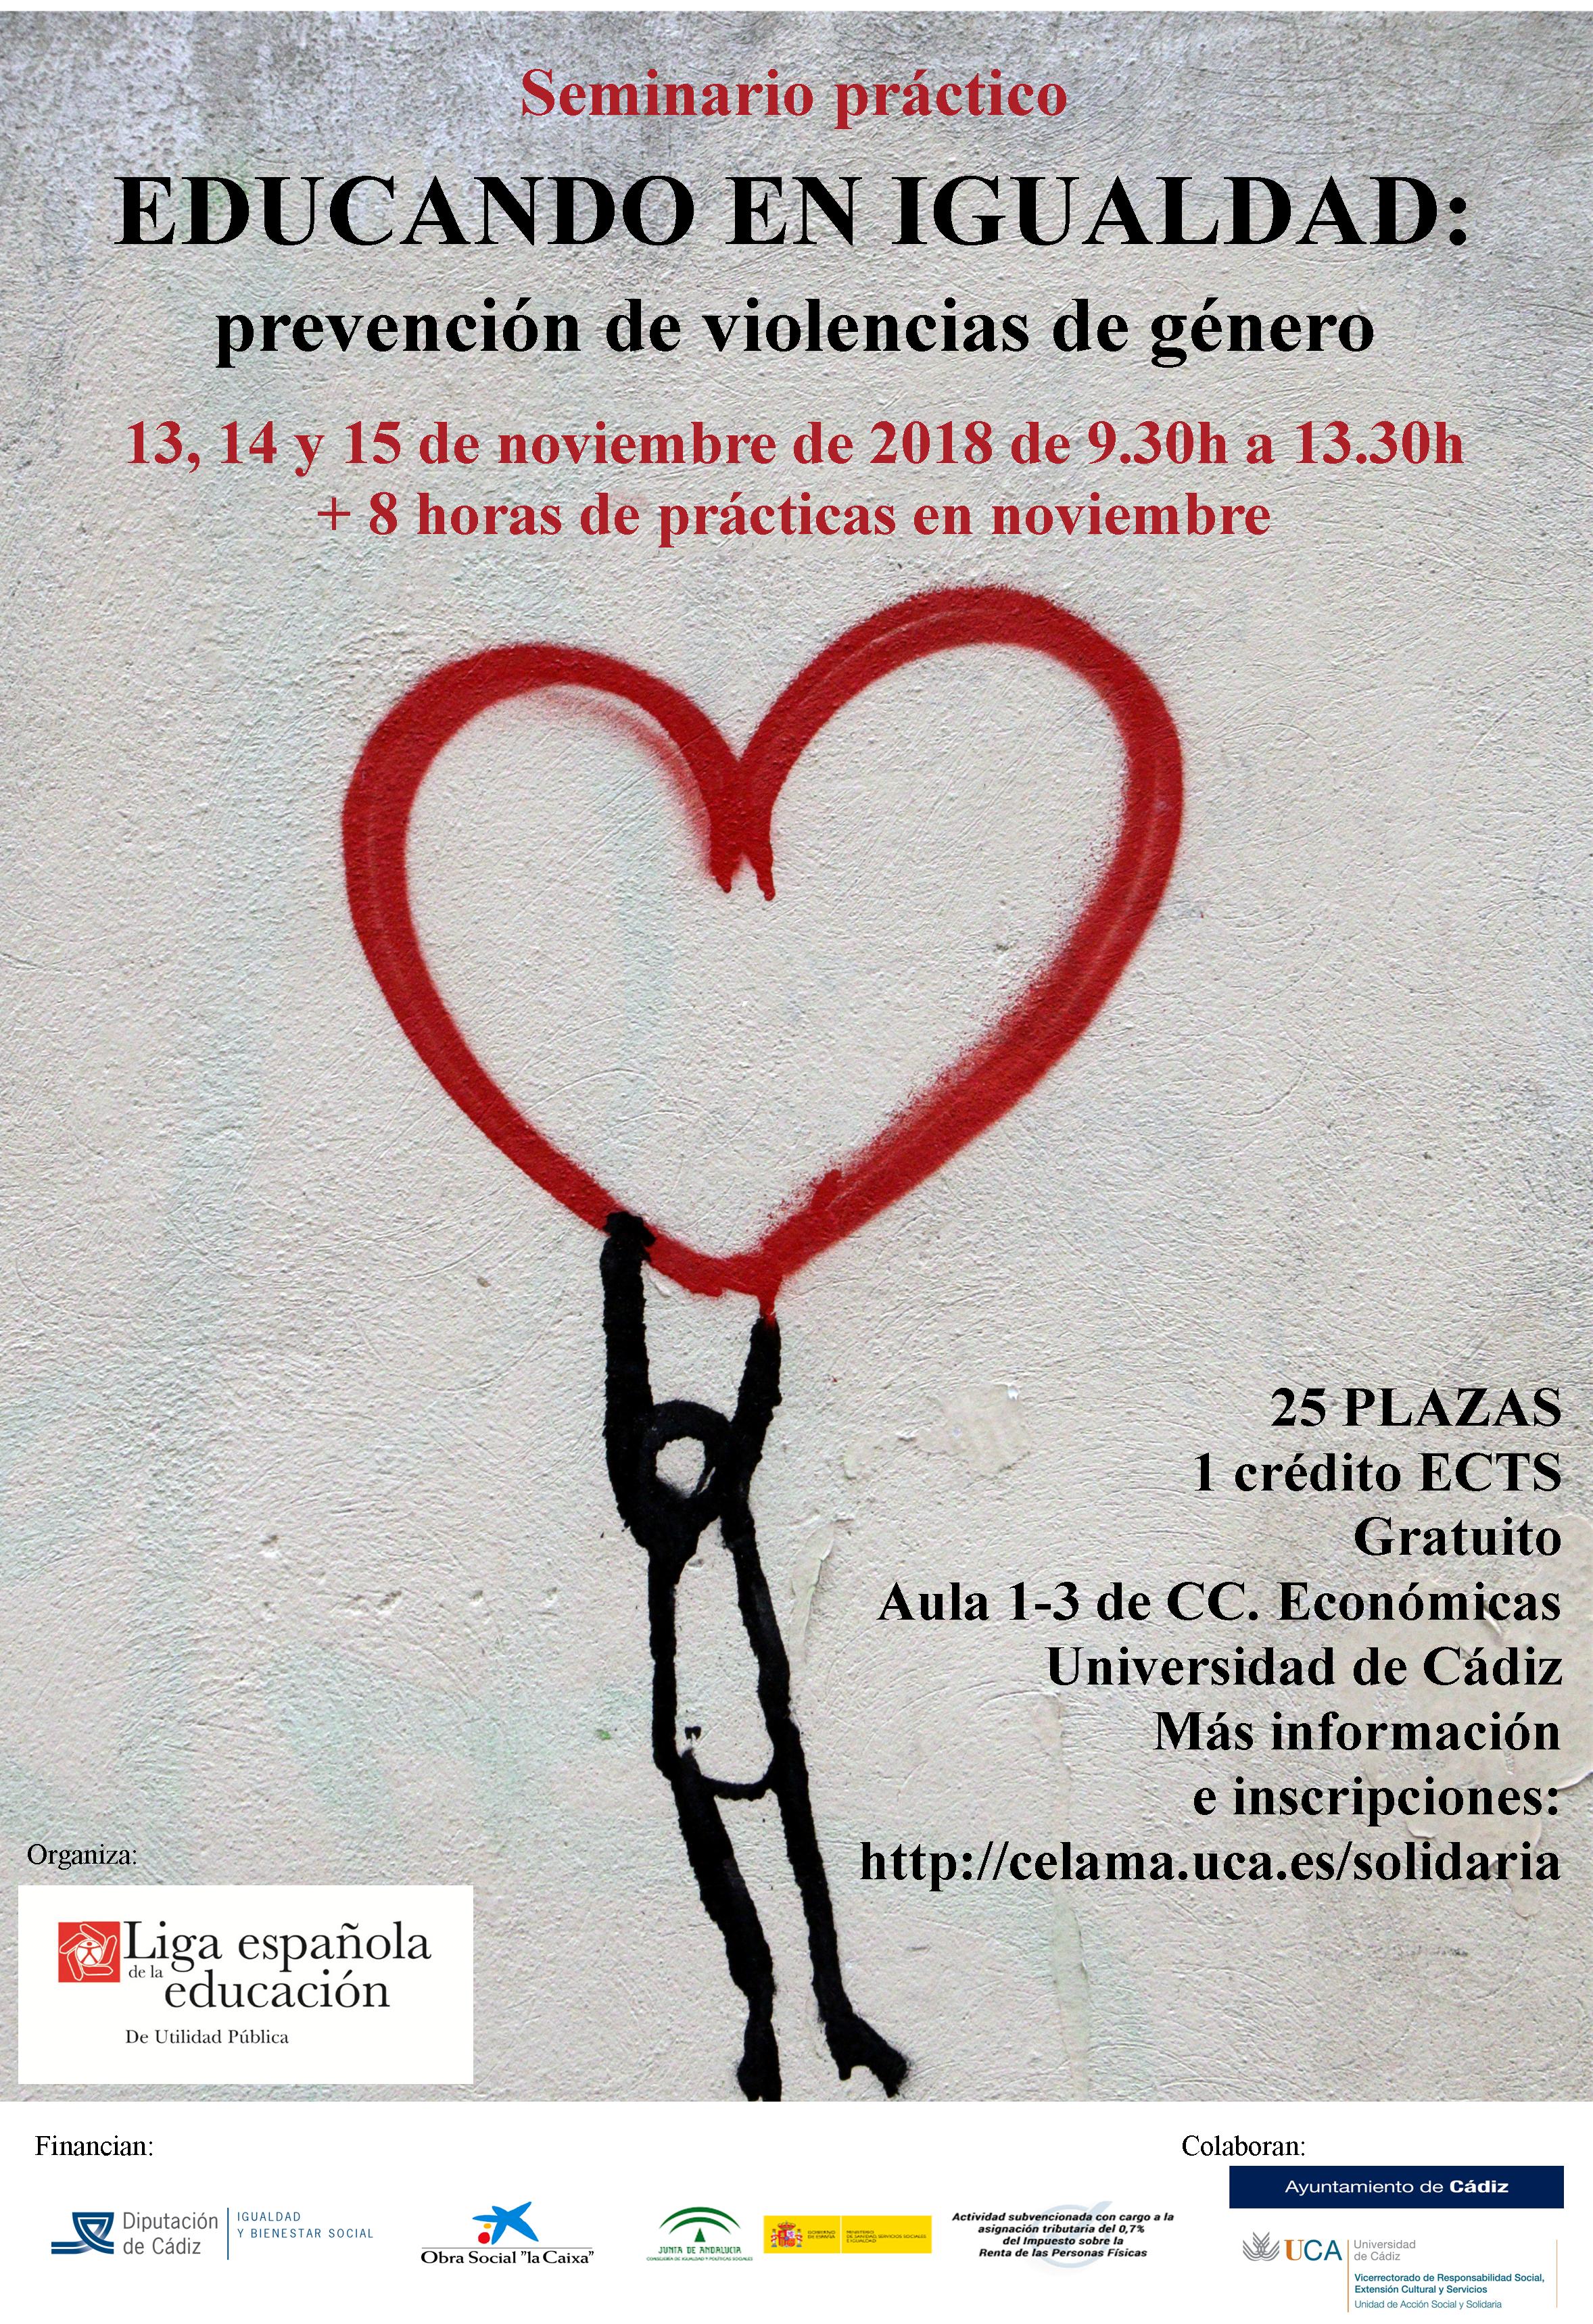 Seminario práctico “Educando en igualdad: Prevención de violencias de género”. 13, 14 y 15 de noviembre. 1 crédito ECTS. Campus de Cádiz